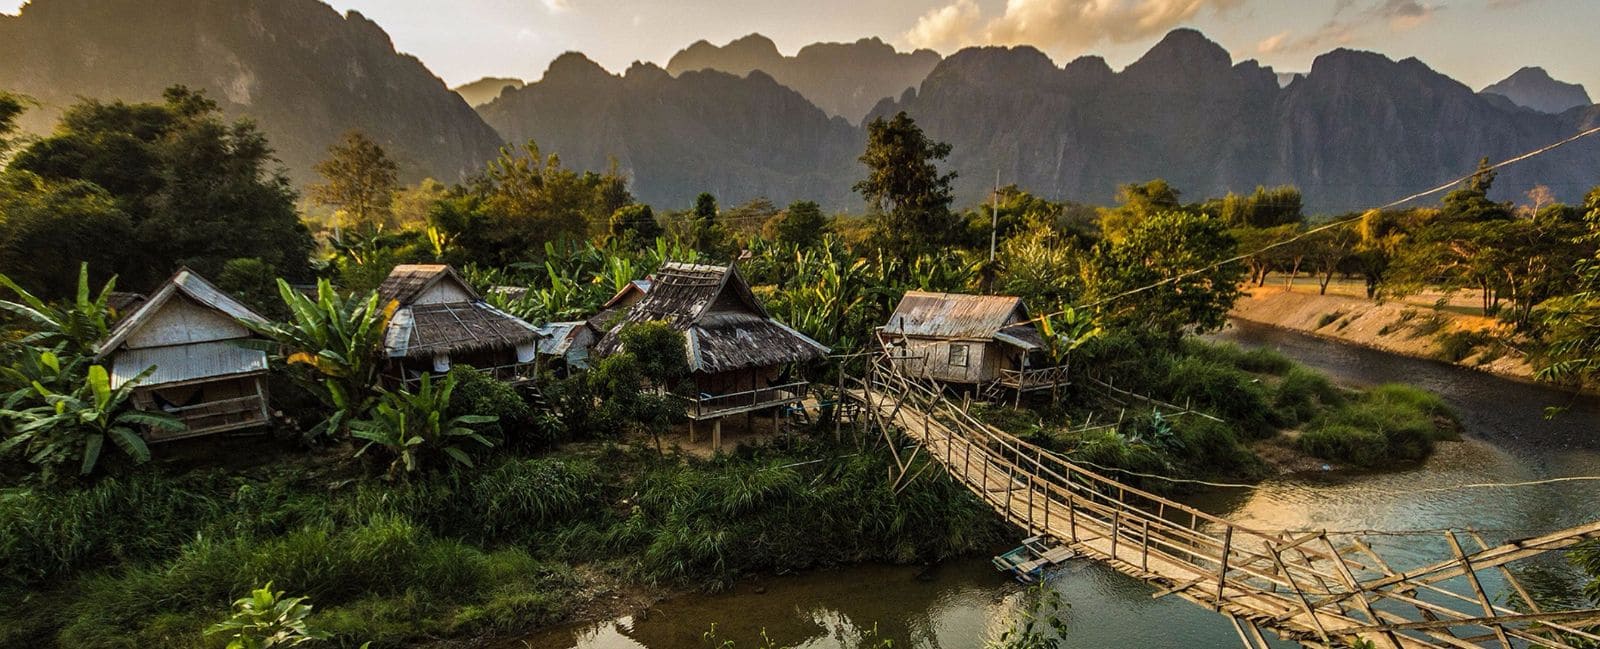 Organizar un viaje a Laos